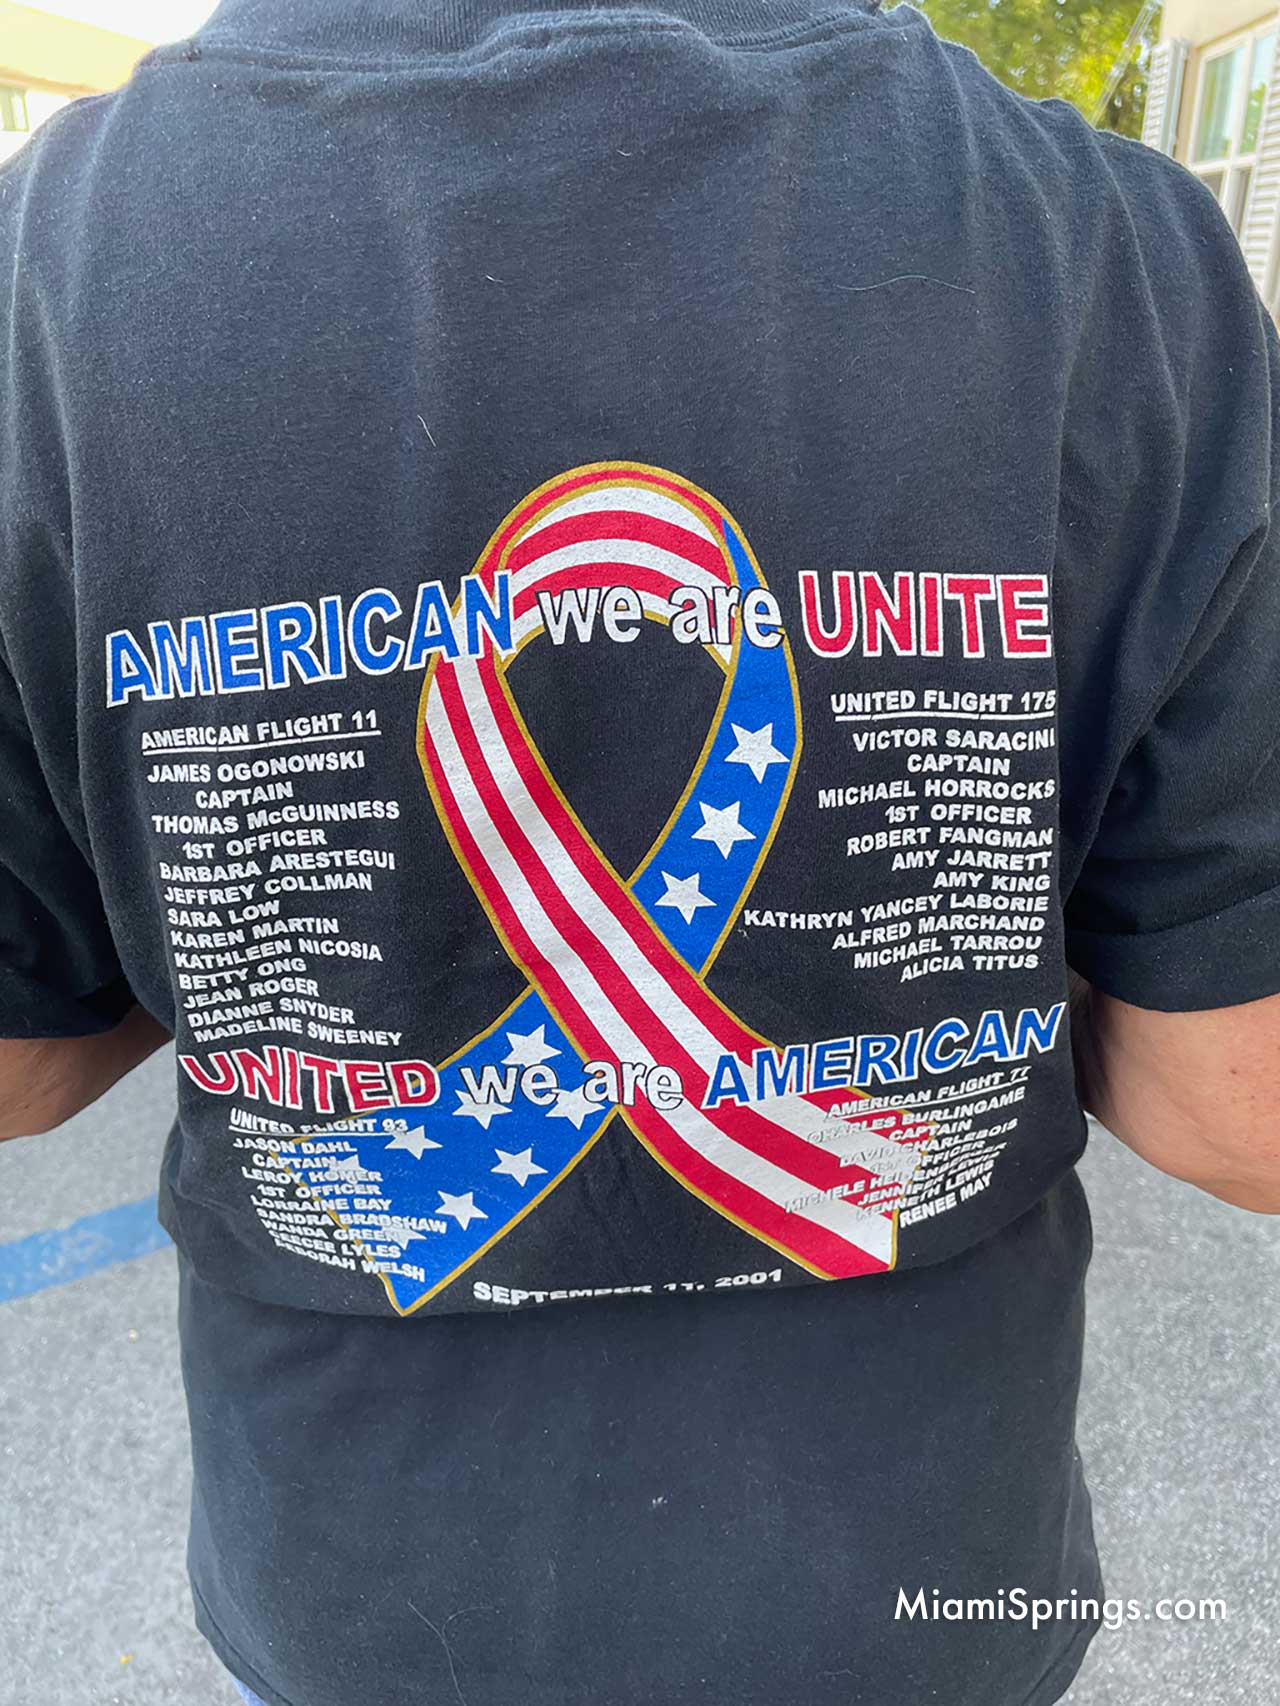 Resident Showing September 11 Shirt